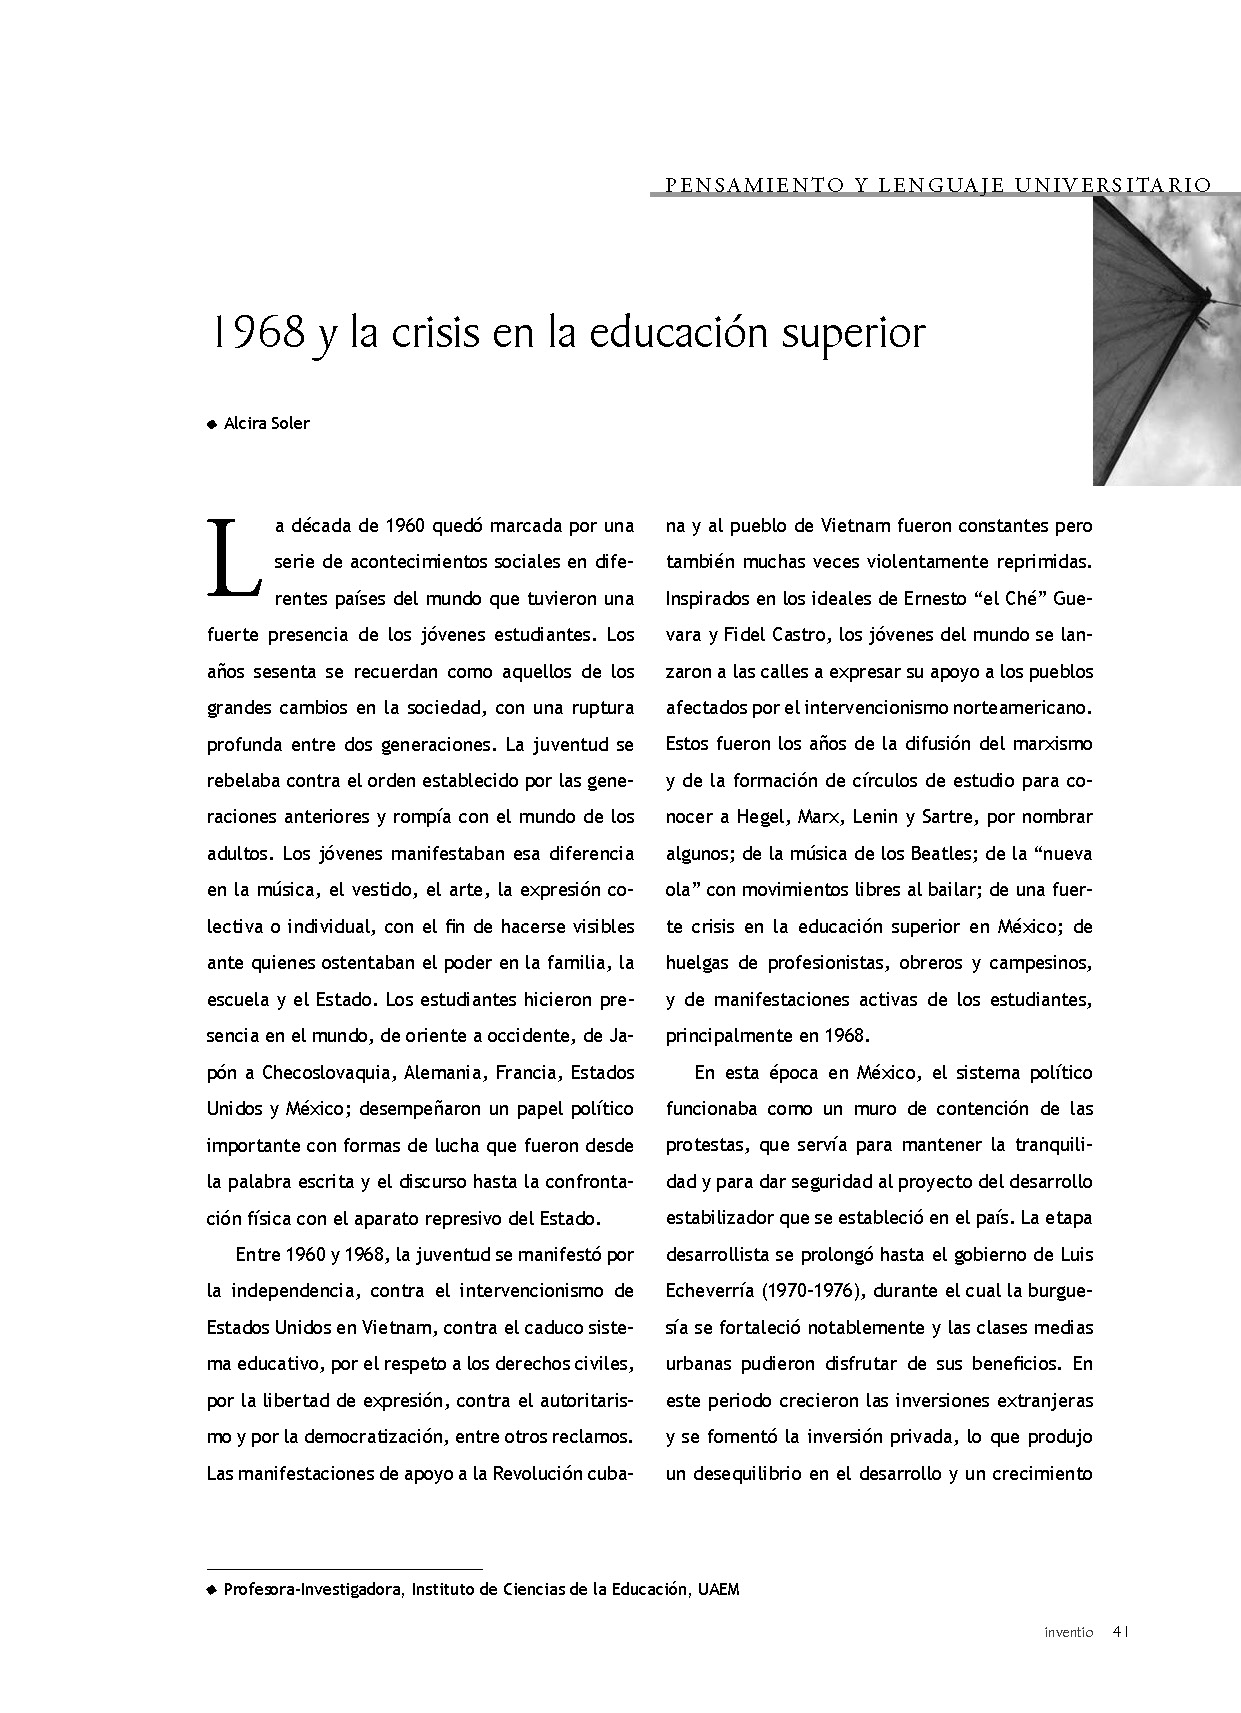 1968 y la crisis en la educación superior